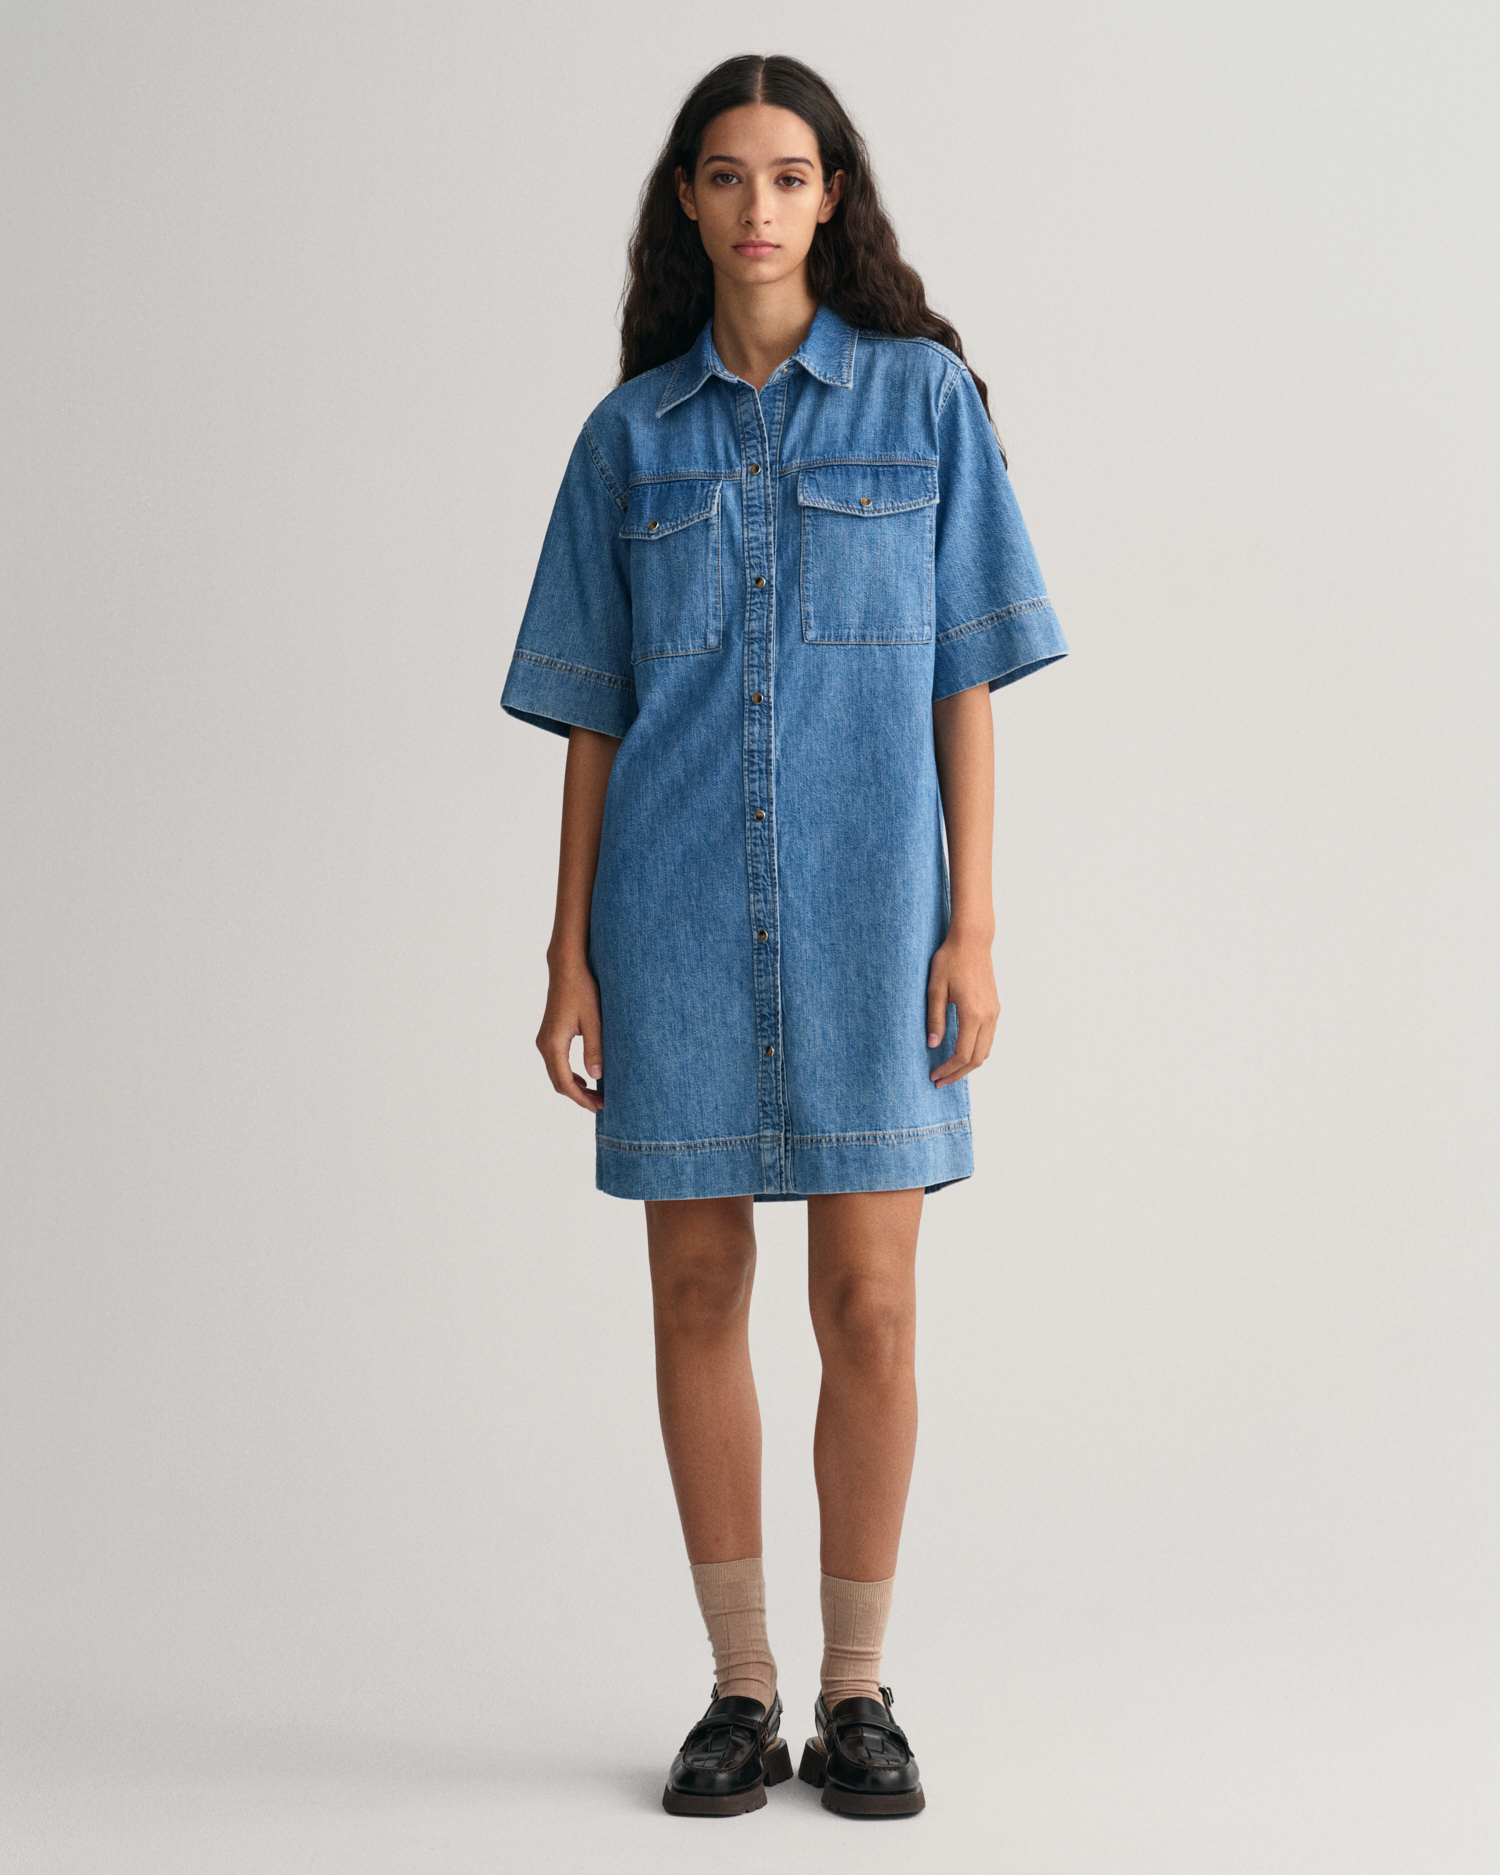 GANT Women Denim Short Sleeve Shirt Dress (42) Blue